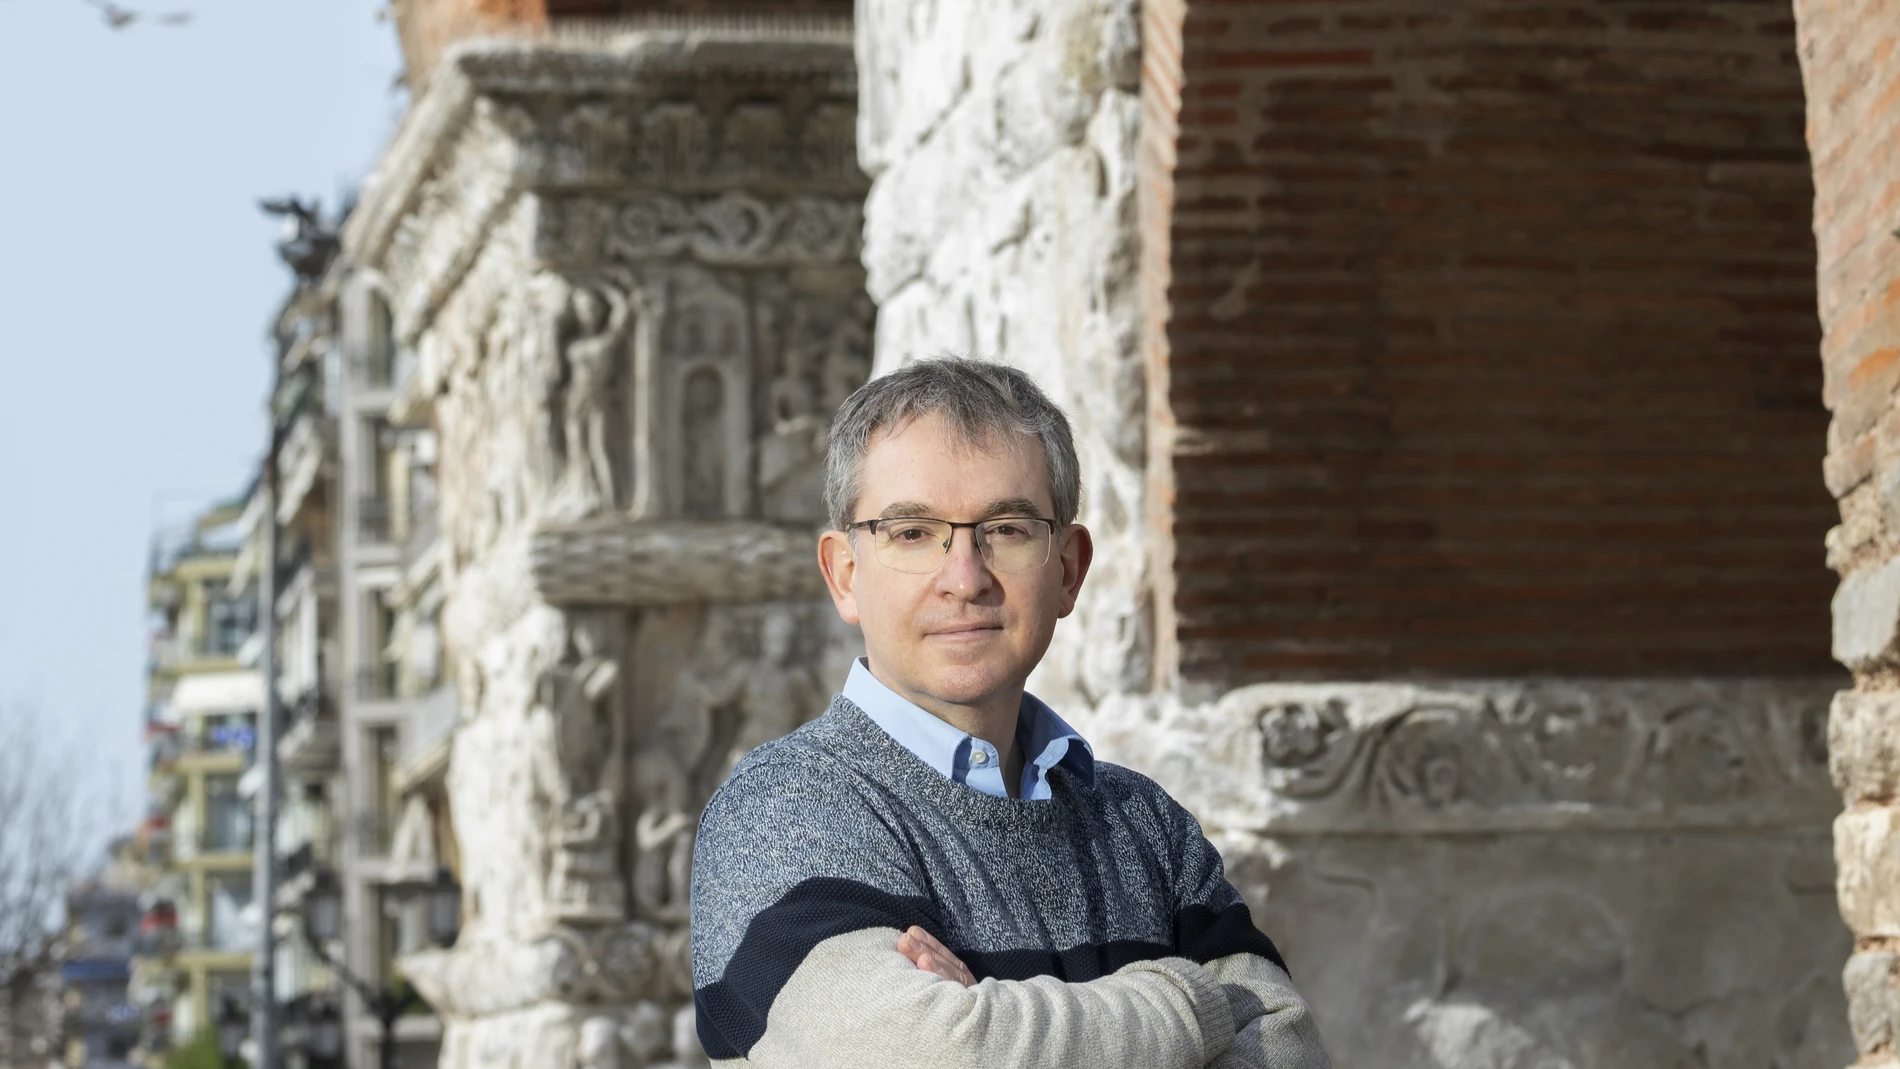 Santiago Posteguillo, autor de cabecera para millones de lectores, publica nuevo libro: «Roma soy yo»